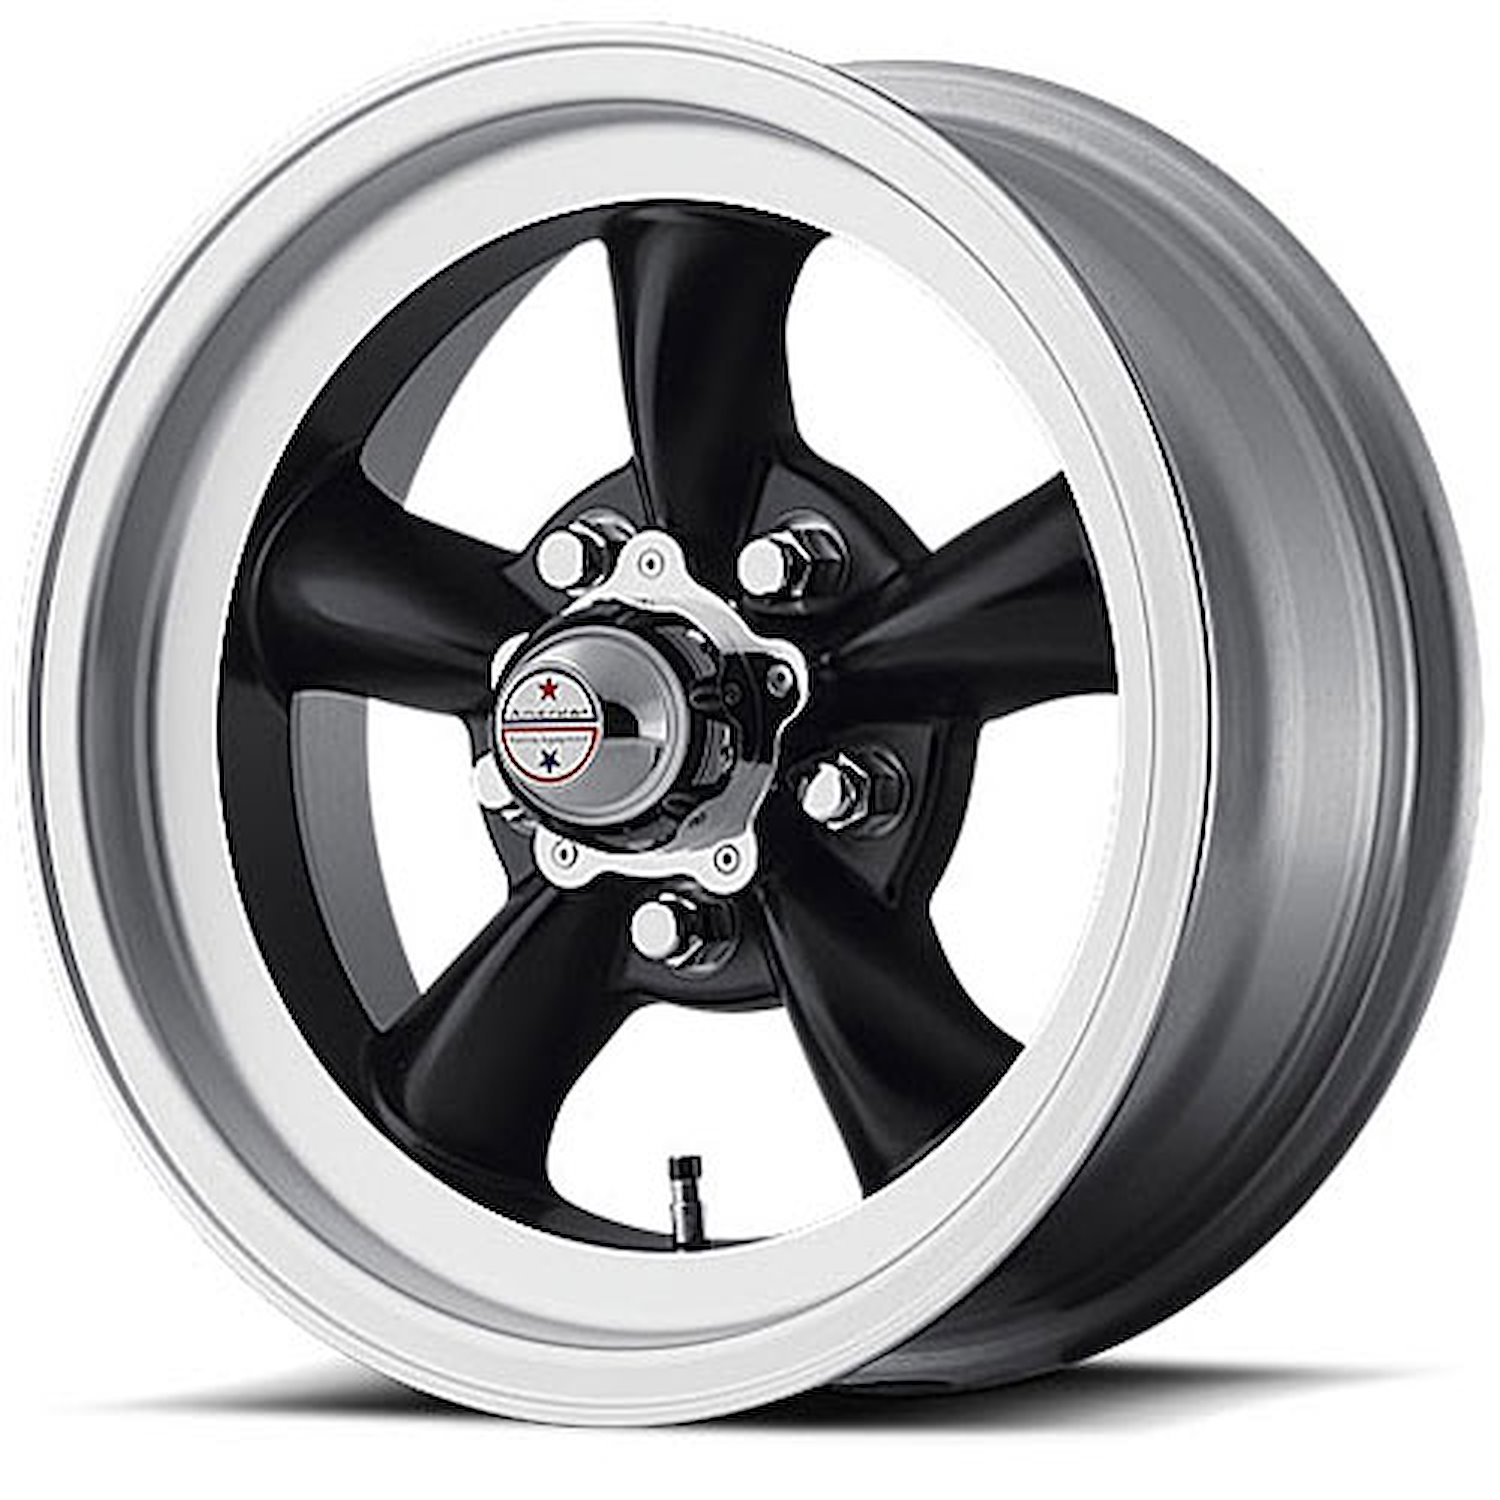 VN105D Series Torq-Thrust D Wheel Size: 15" x 10"